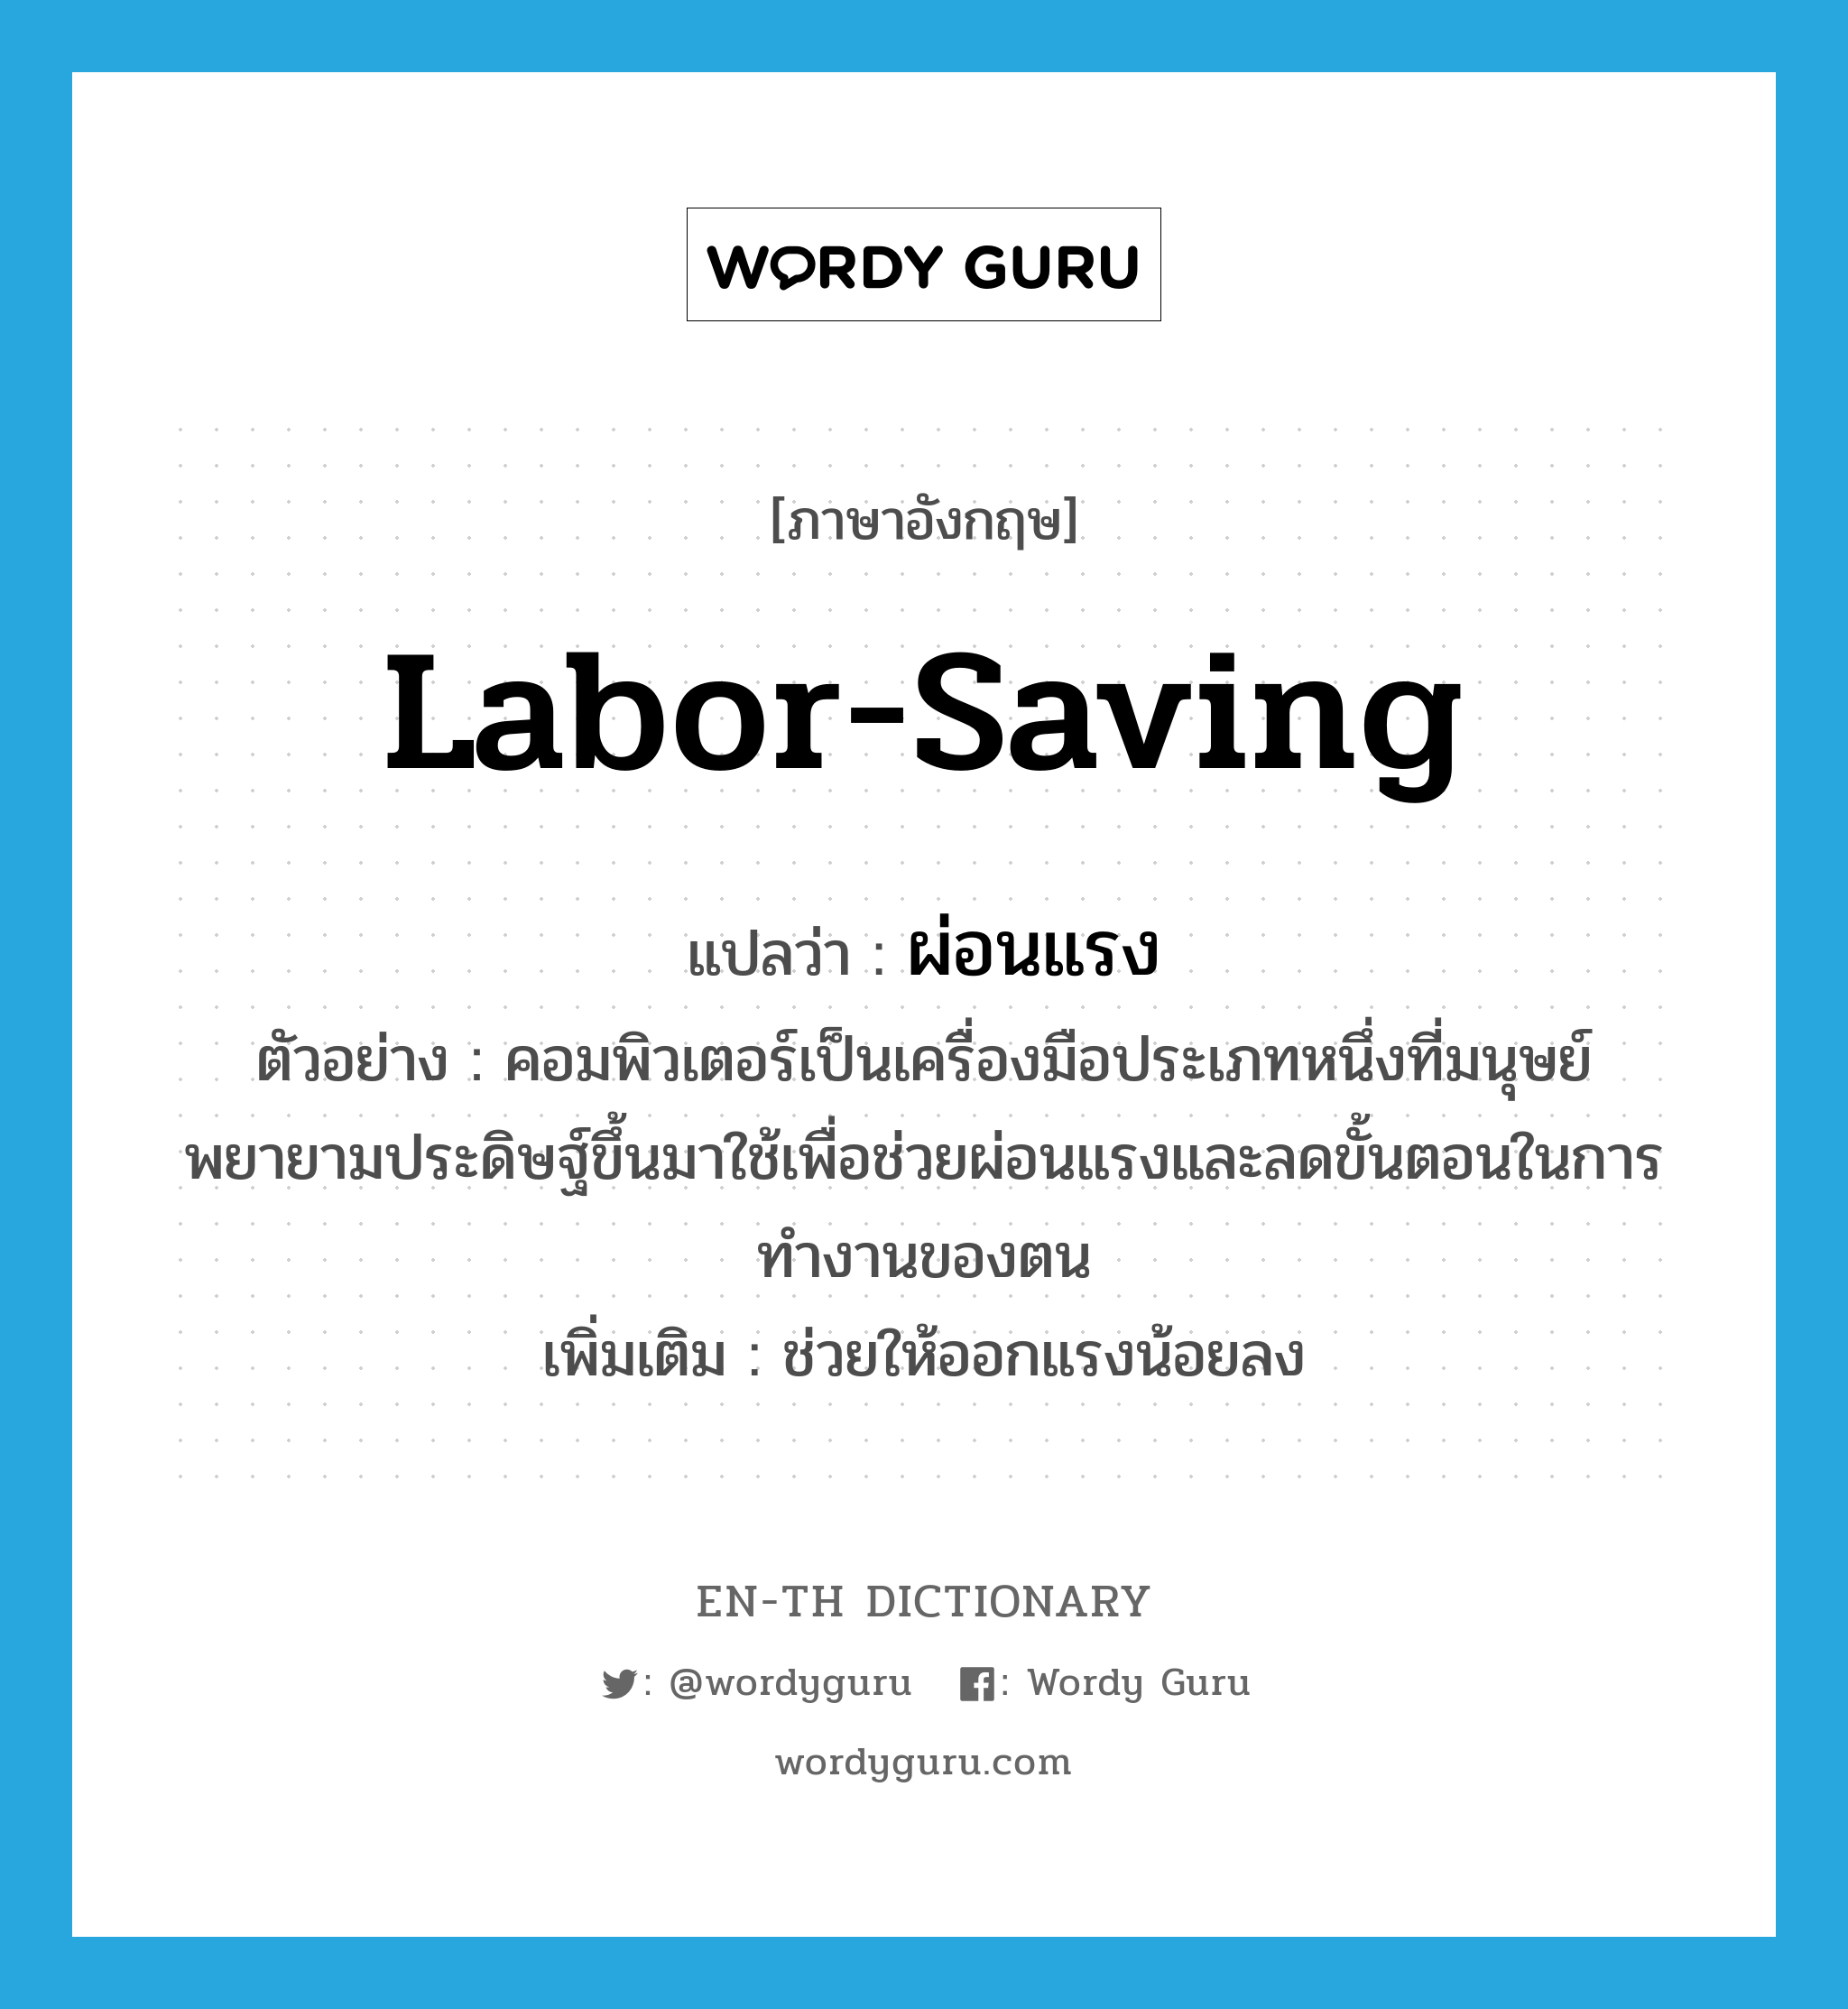 labor-saving แปลว่า?, คำศัพท์ภาษาอังกฤษ labor-saving แปลว่า ผ่อนแรง ประเภท V ตัวอย่าง คอมพิวเตอร์เป็นเครื่องมือประเภทหนึ่งที่มนุษย์พยายามประดิษฐ์ขึ้นมาใช้เพื่อช่วยผ่อนแรงและลดขั้นตอนในการทำงานของตน เพิ่มเติม ช่วยให้ออกแรงน้อยลง หมวด V